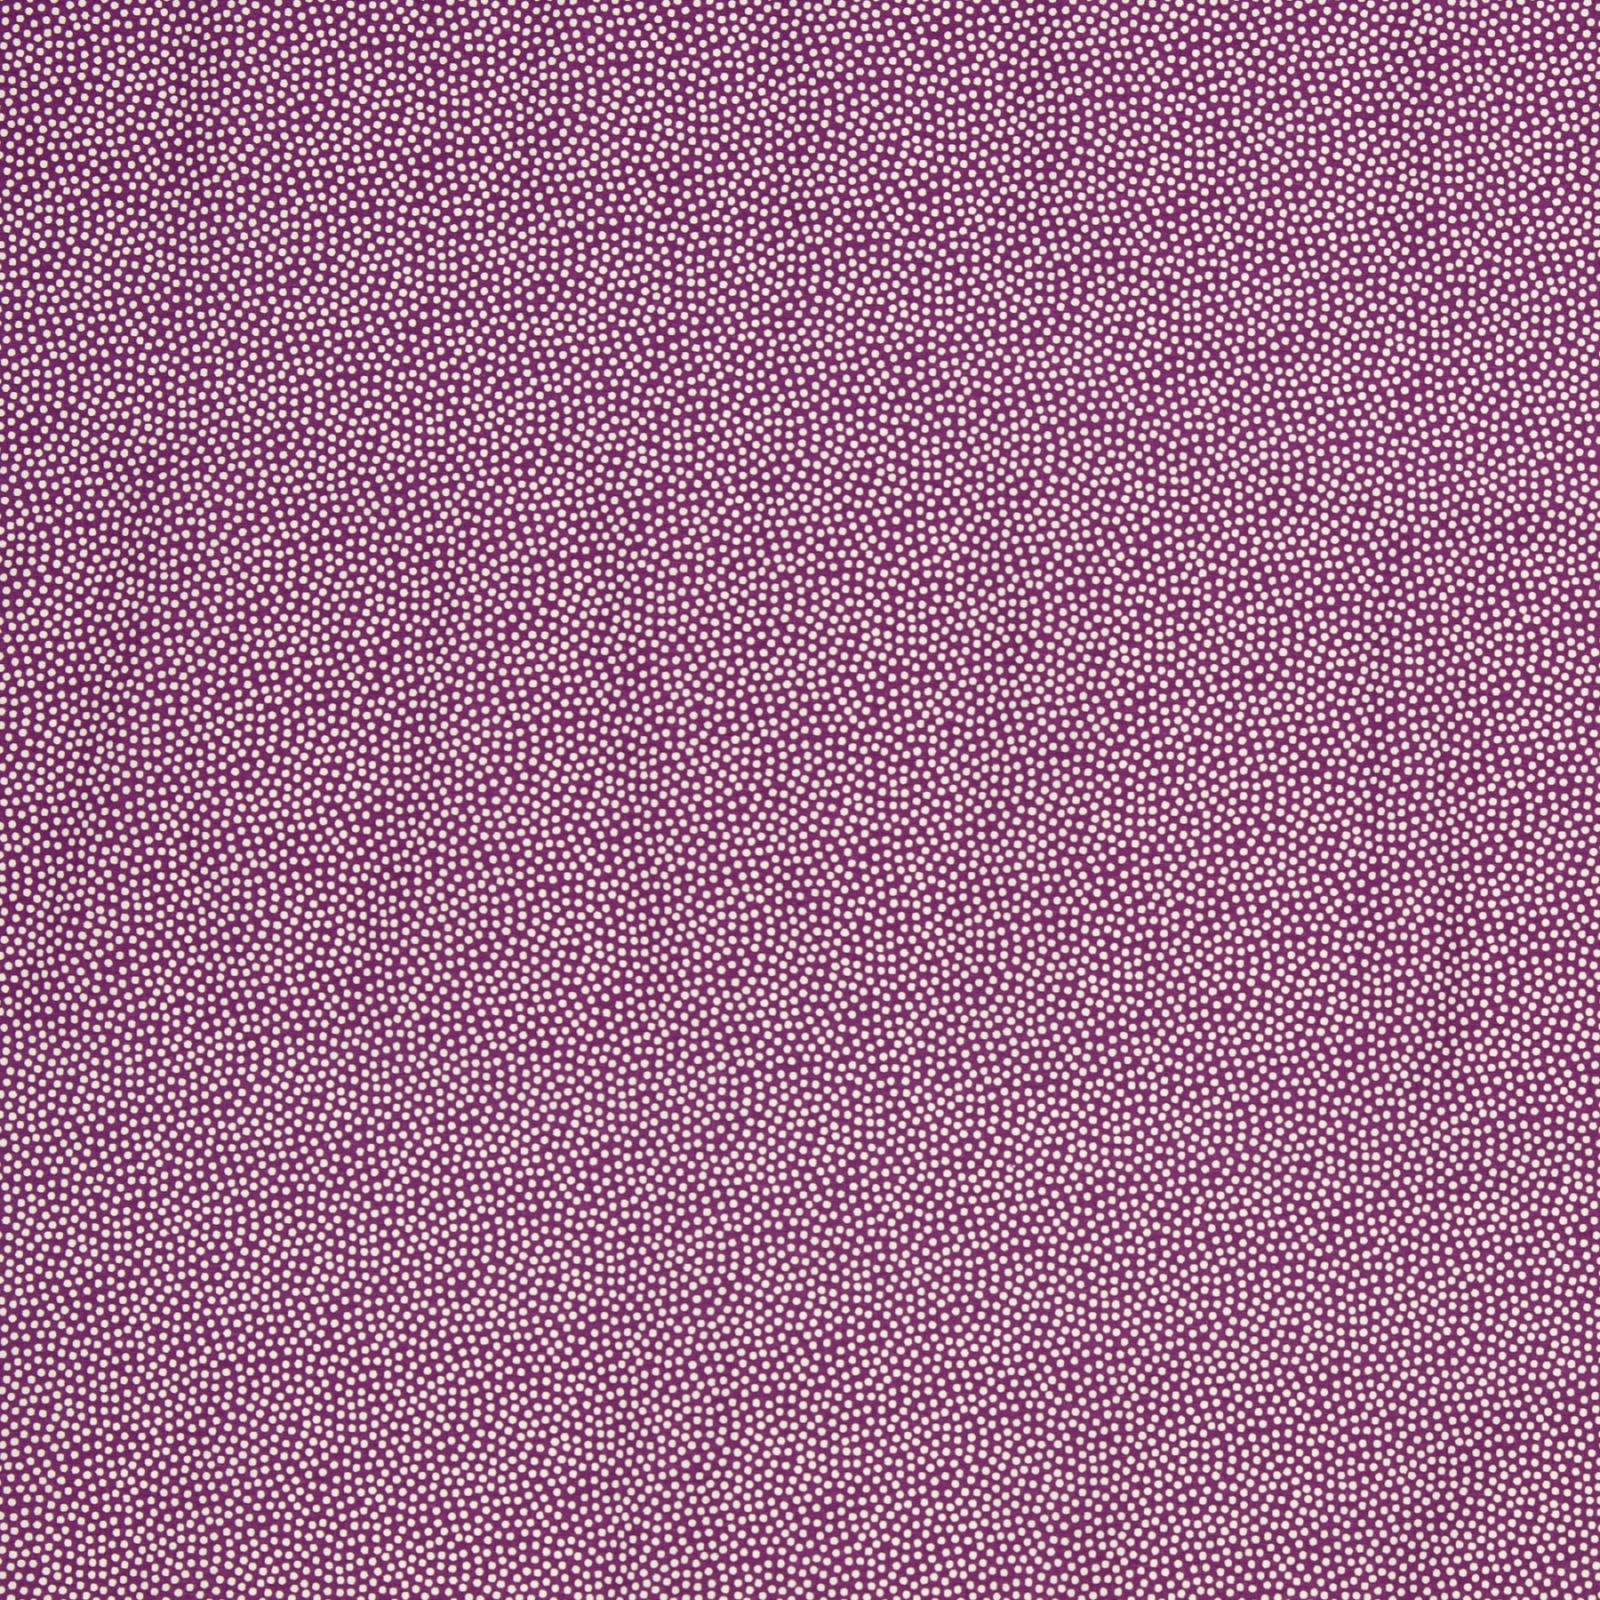 Baumwollwebware - unregelmäßige Punkte - violett/weiß - 100 Baumwolle - Dotty - Swafing 2